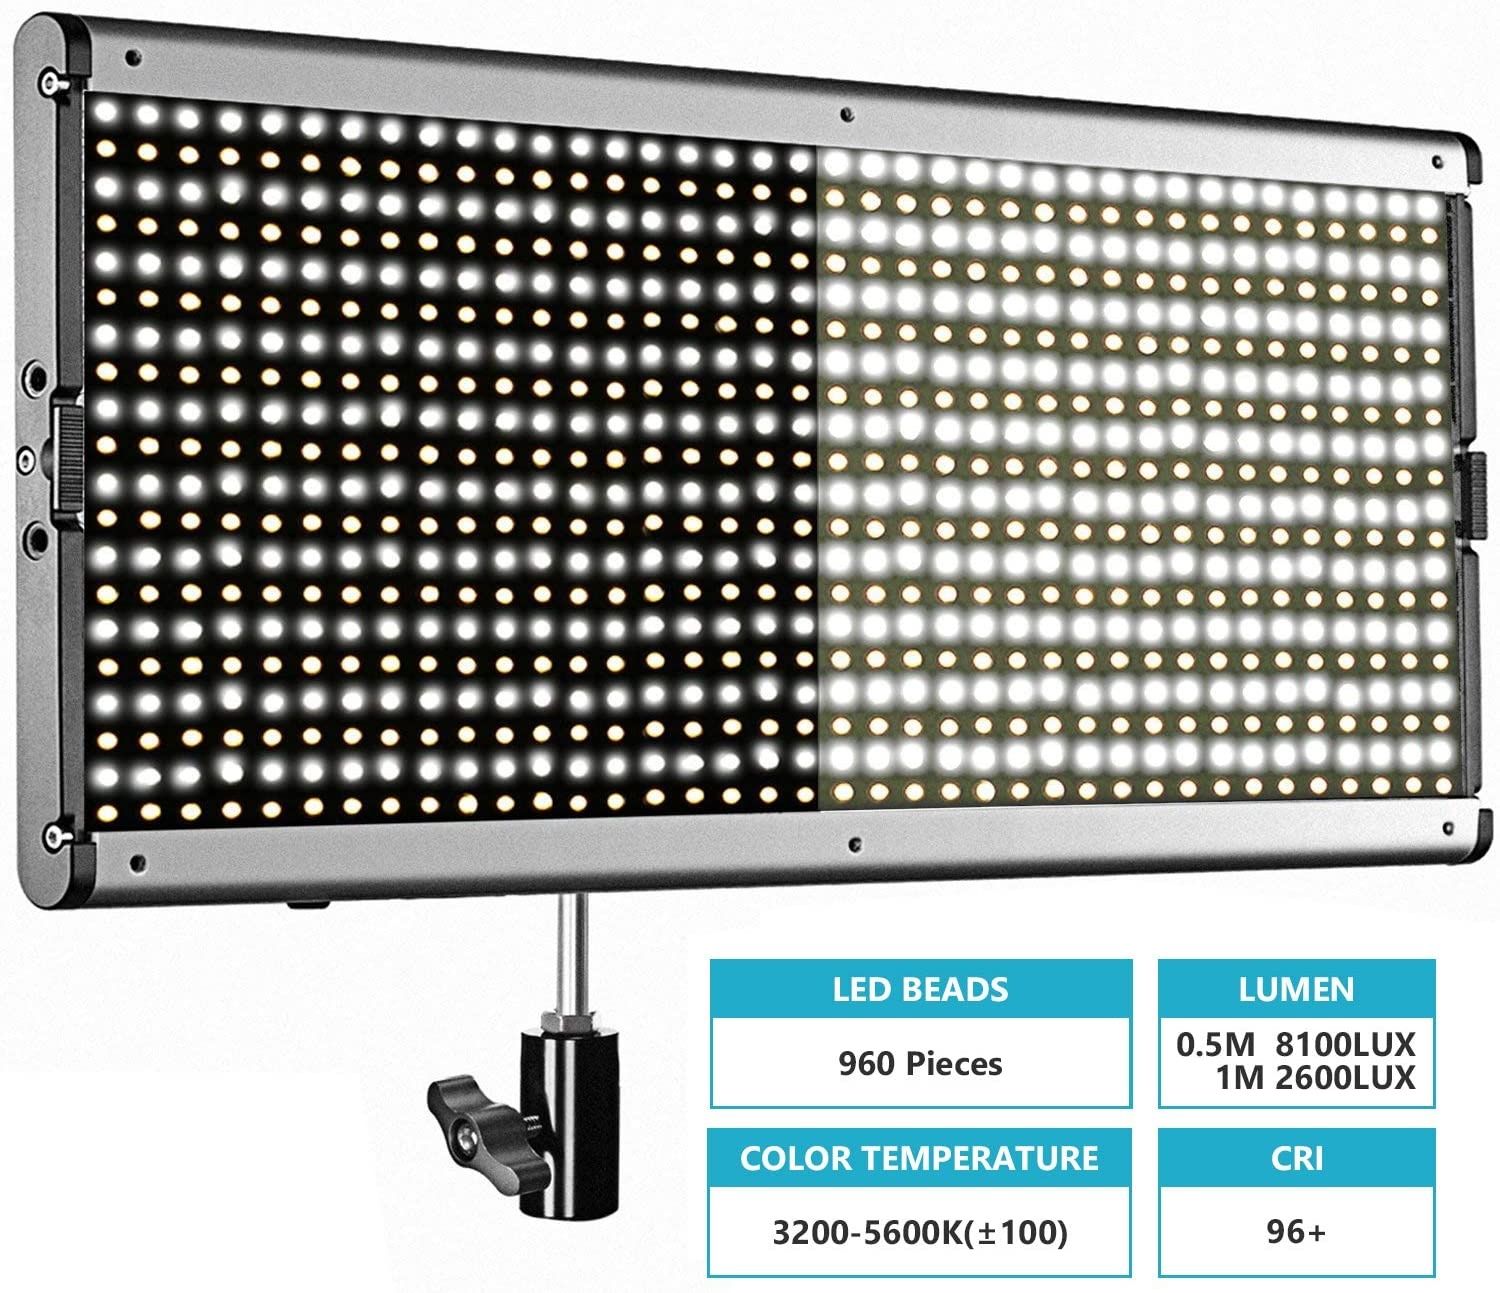 Painel de Iluminação Neewer 2,4G 960 LED Bicolor Com comando NOVO